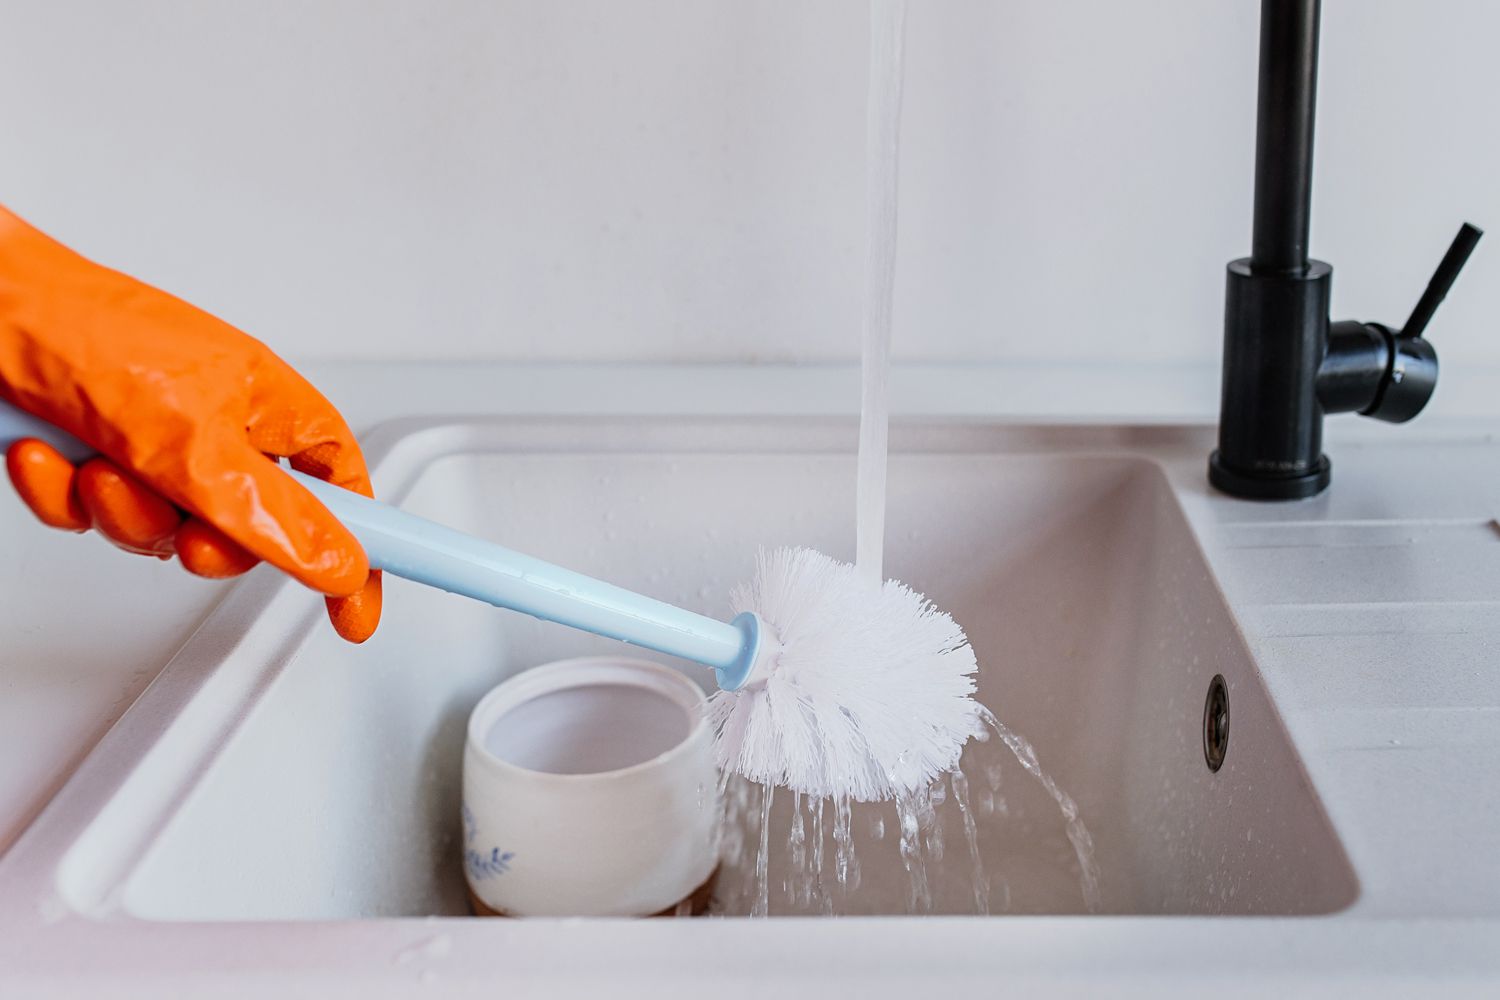 Enjuague el cepillo de la taza del inodoro después de cada uso